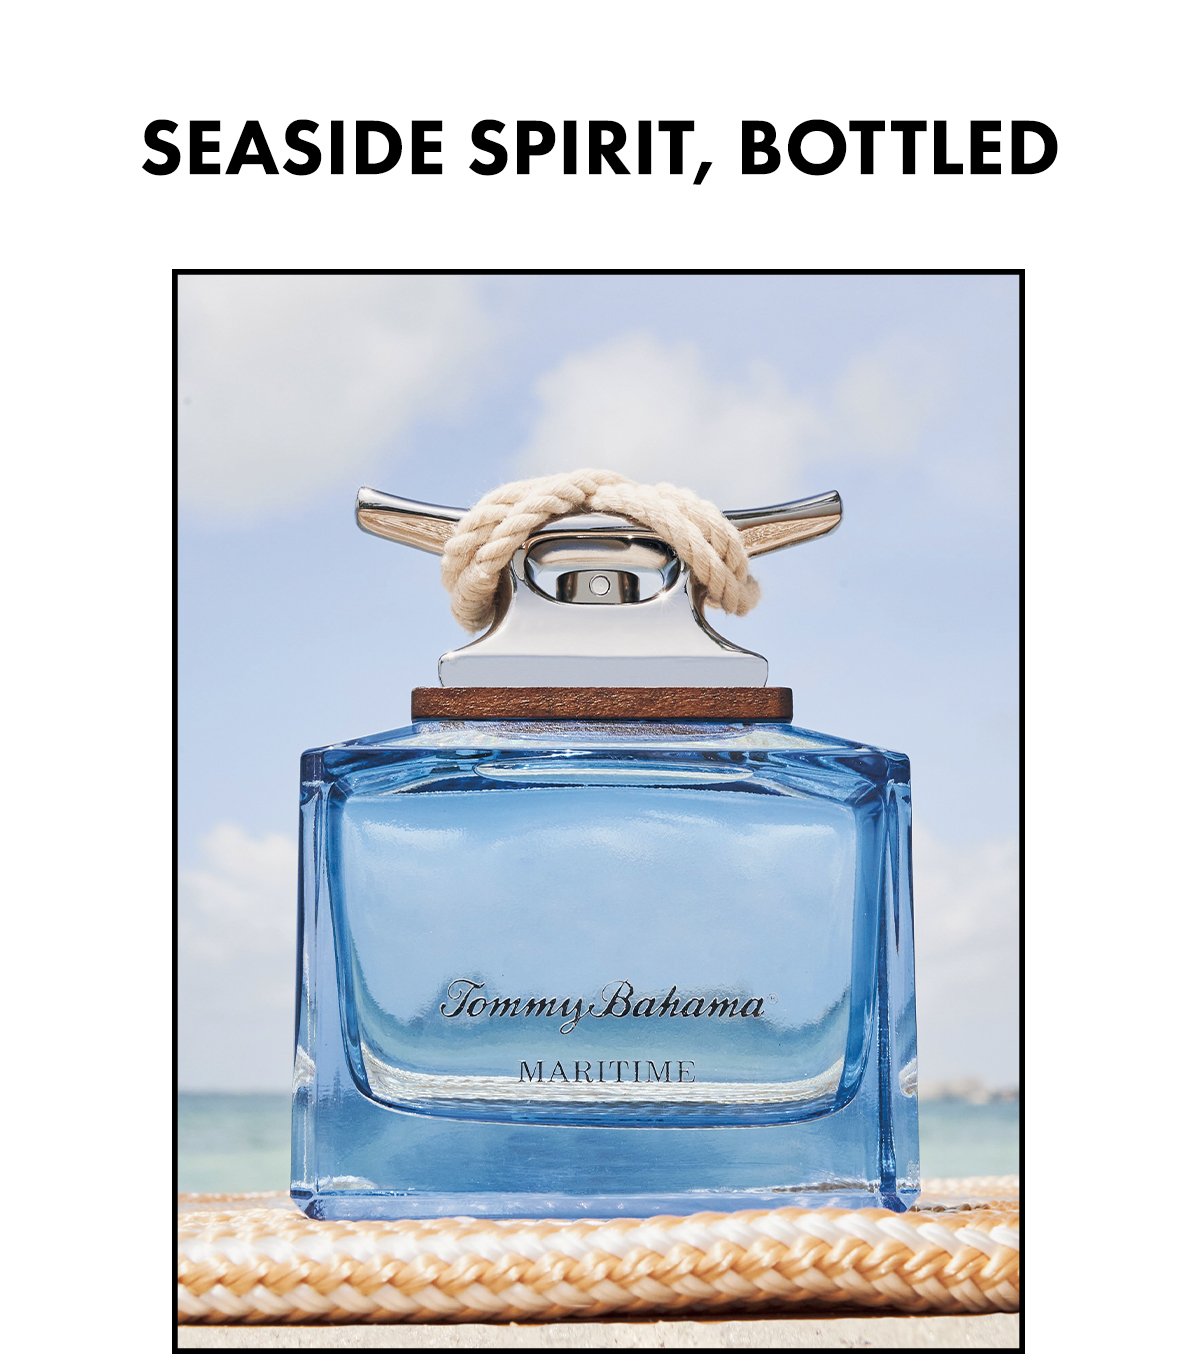 Seaside Spirit, Bottled